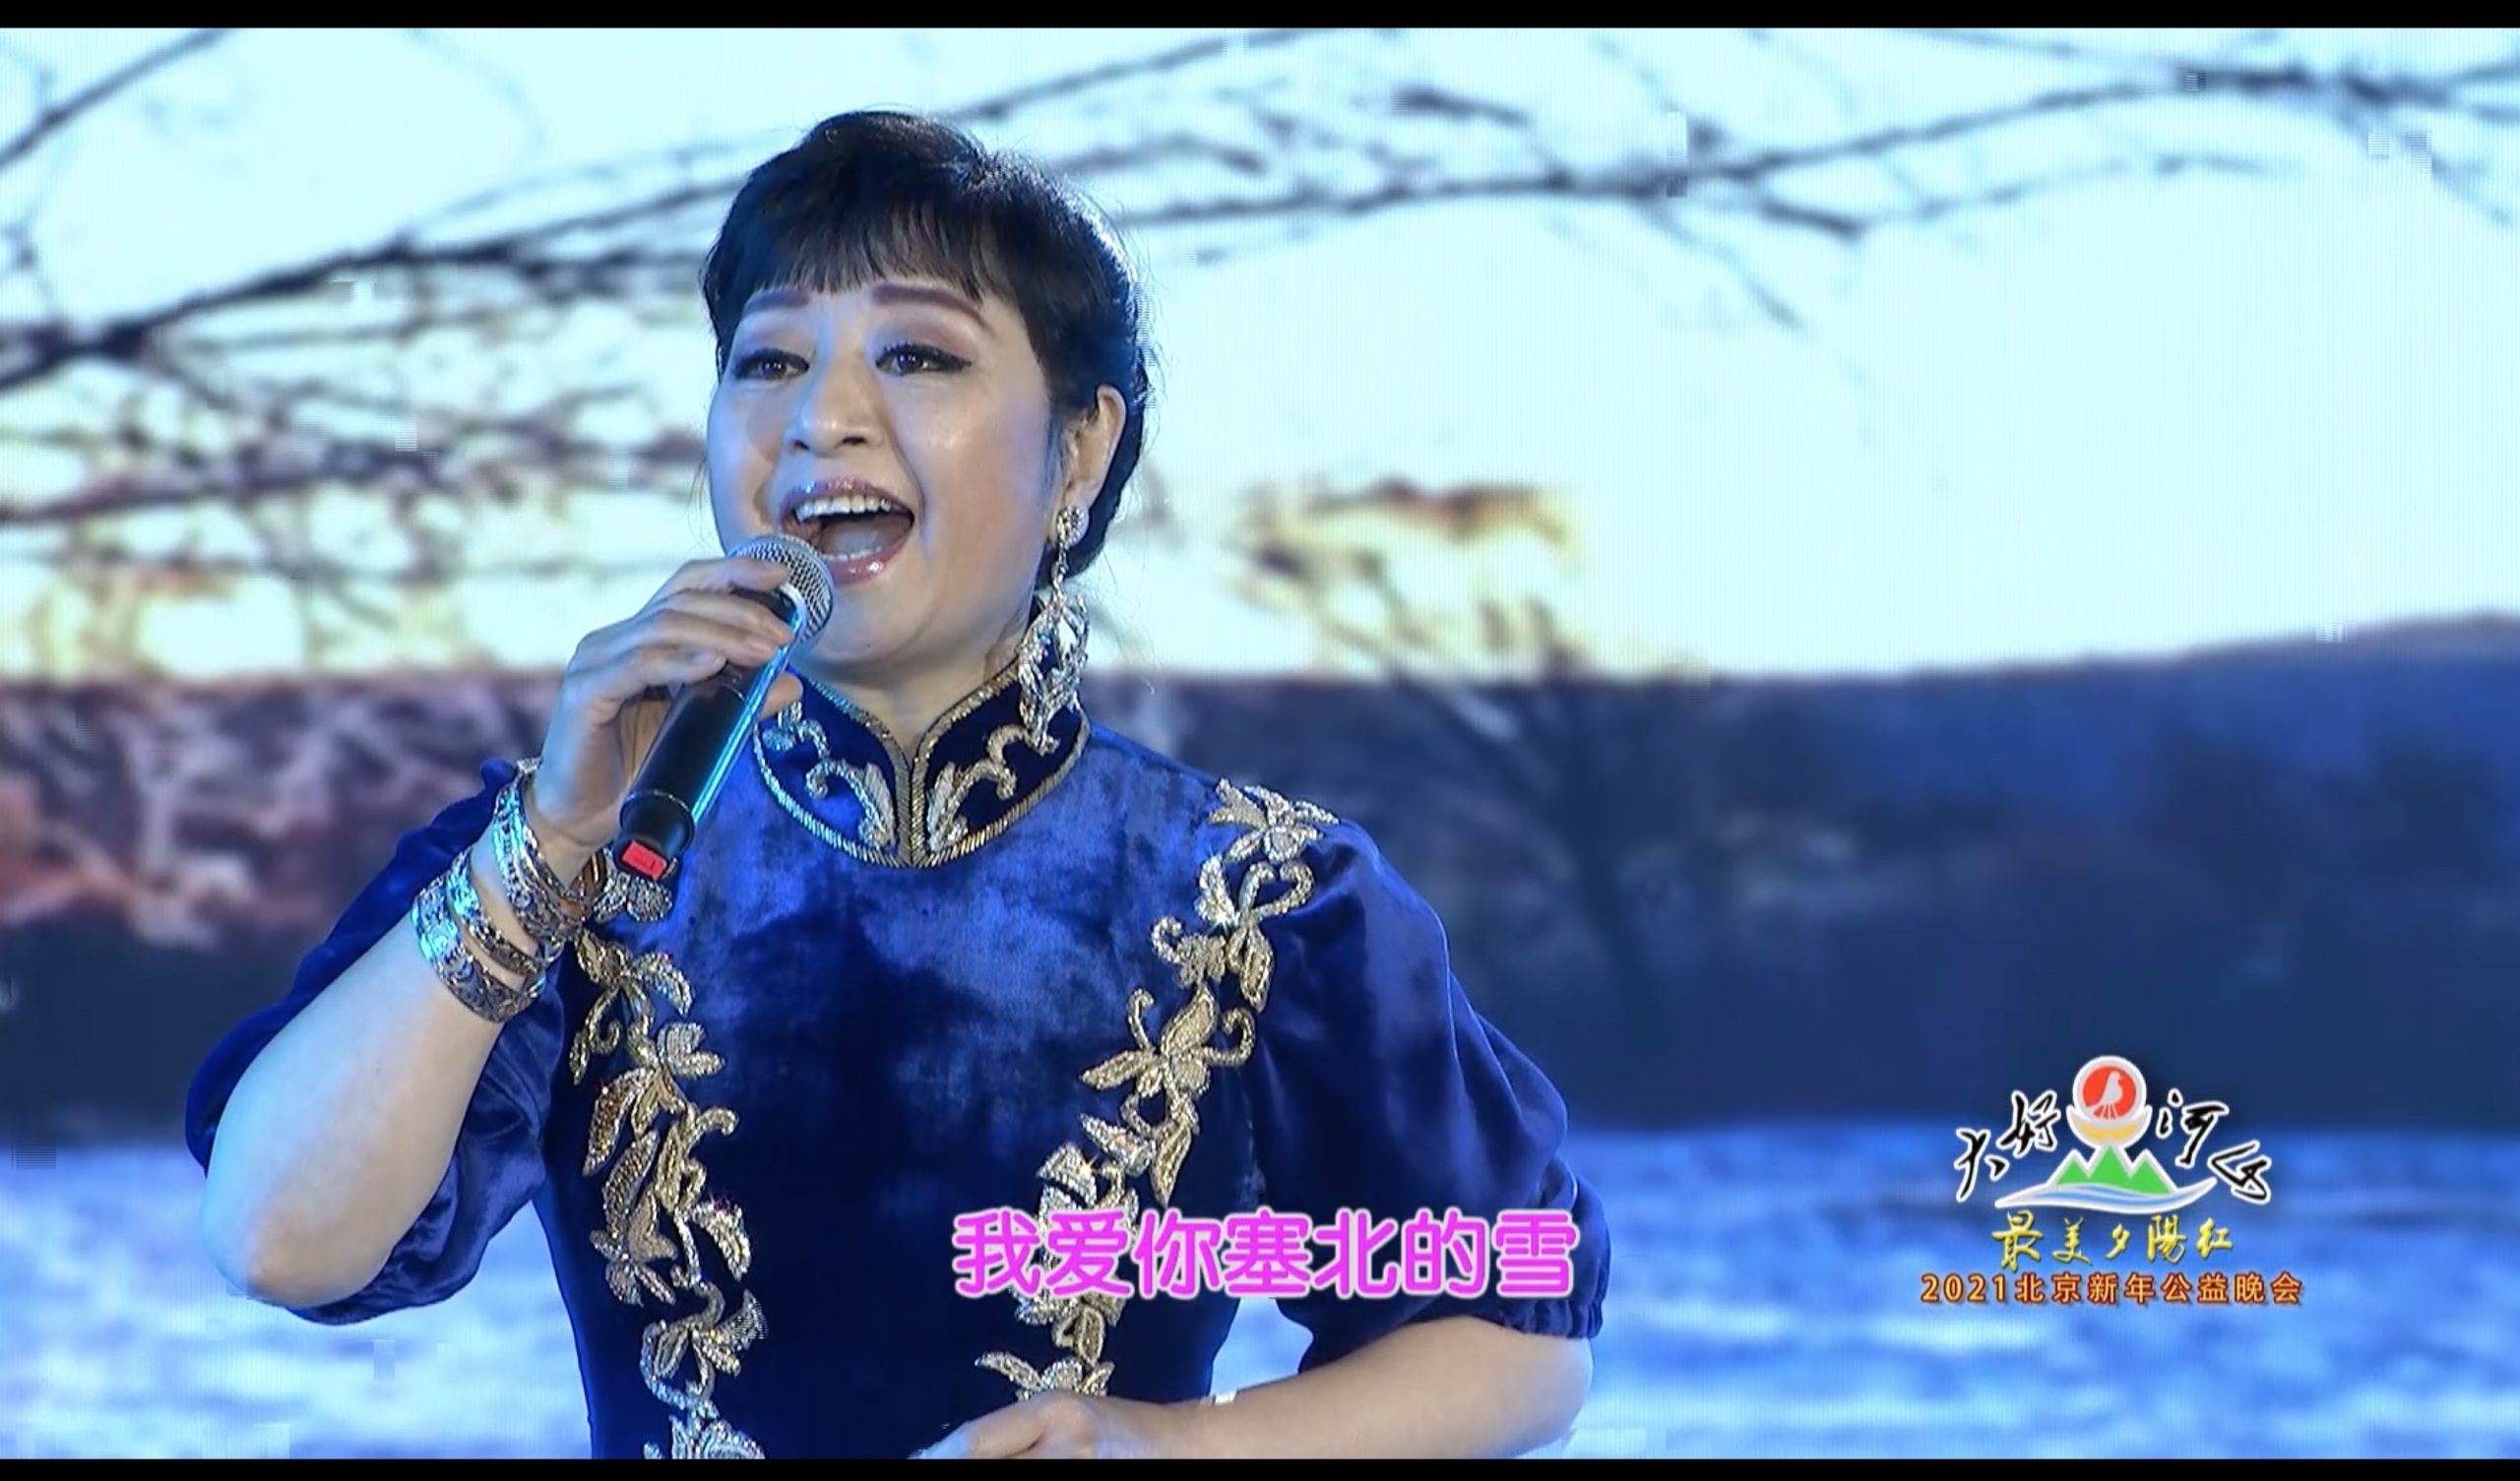 2021北京新年公益晚会 歌曲《我爱你塞北的雪》殷秀梅